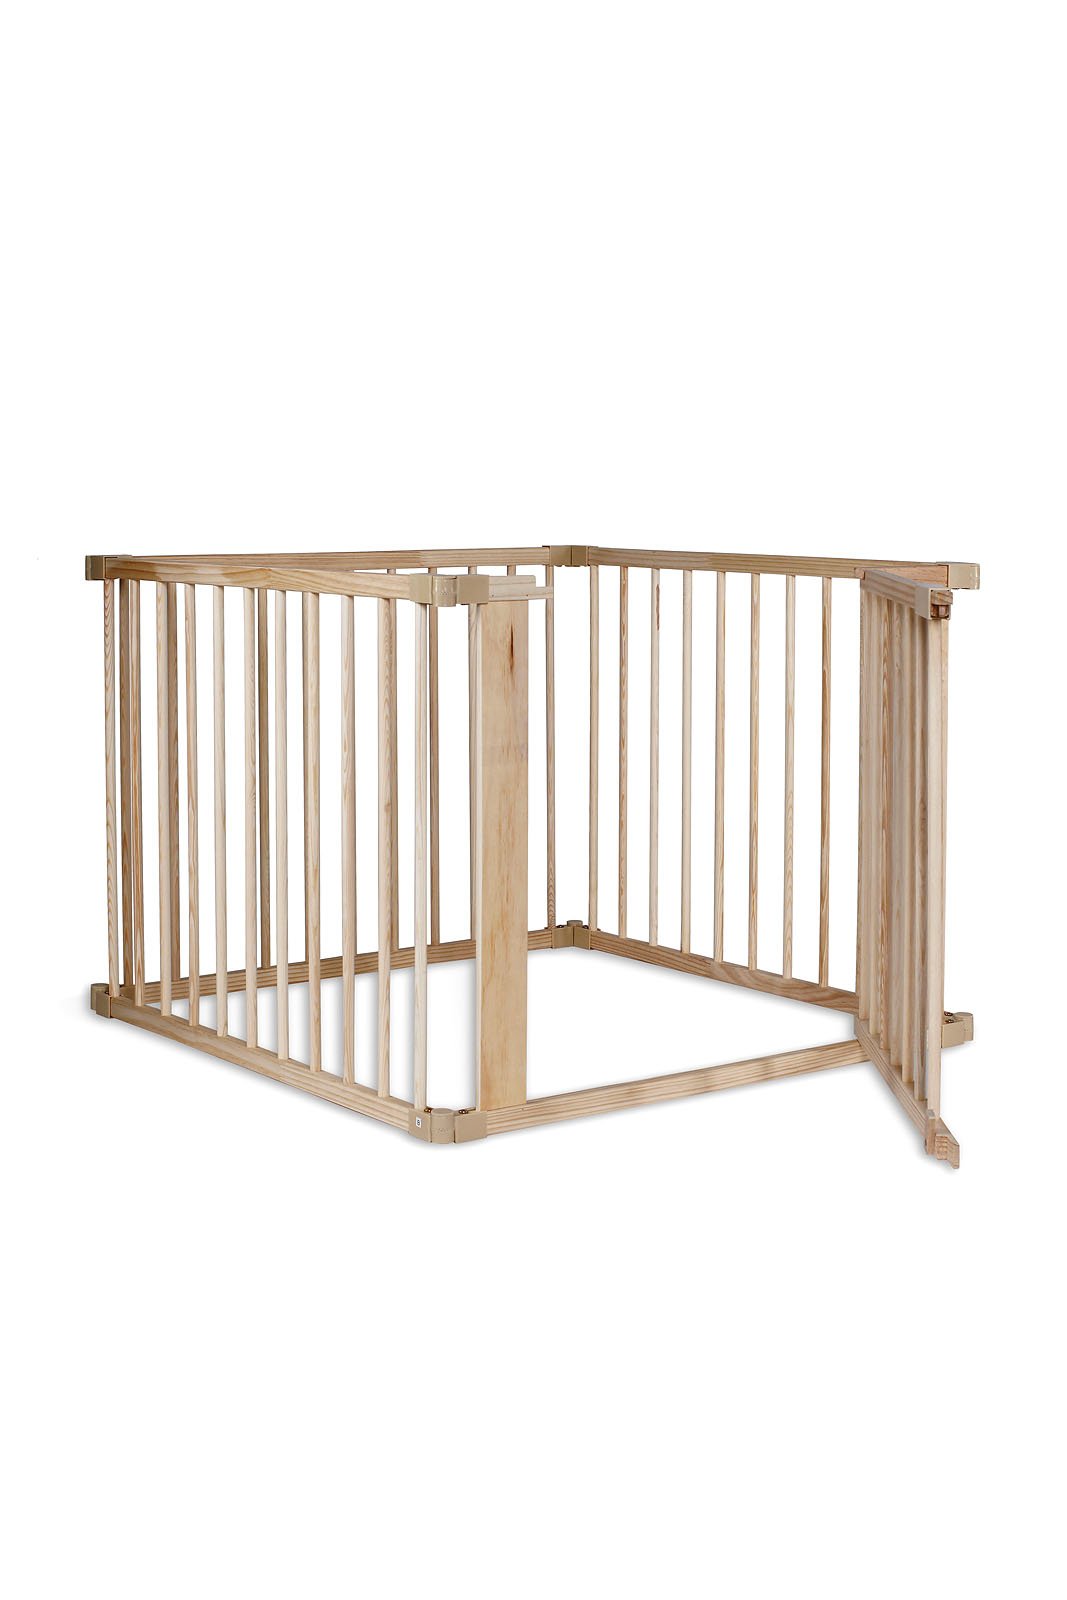 dibea Baby-Laufstall Holz-Laufgitter mit Tür, 4 Elemente je 90x68 cm